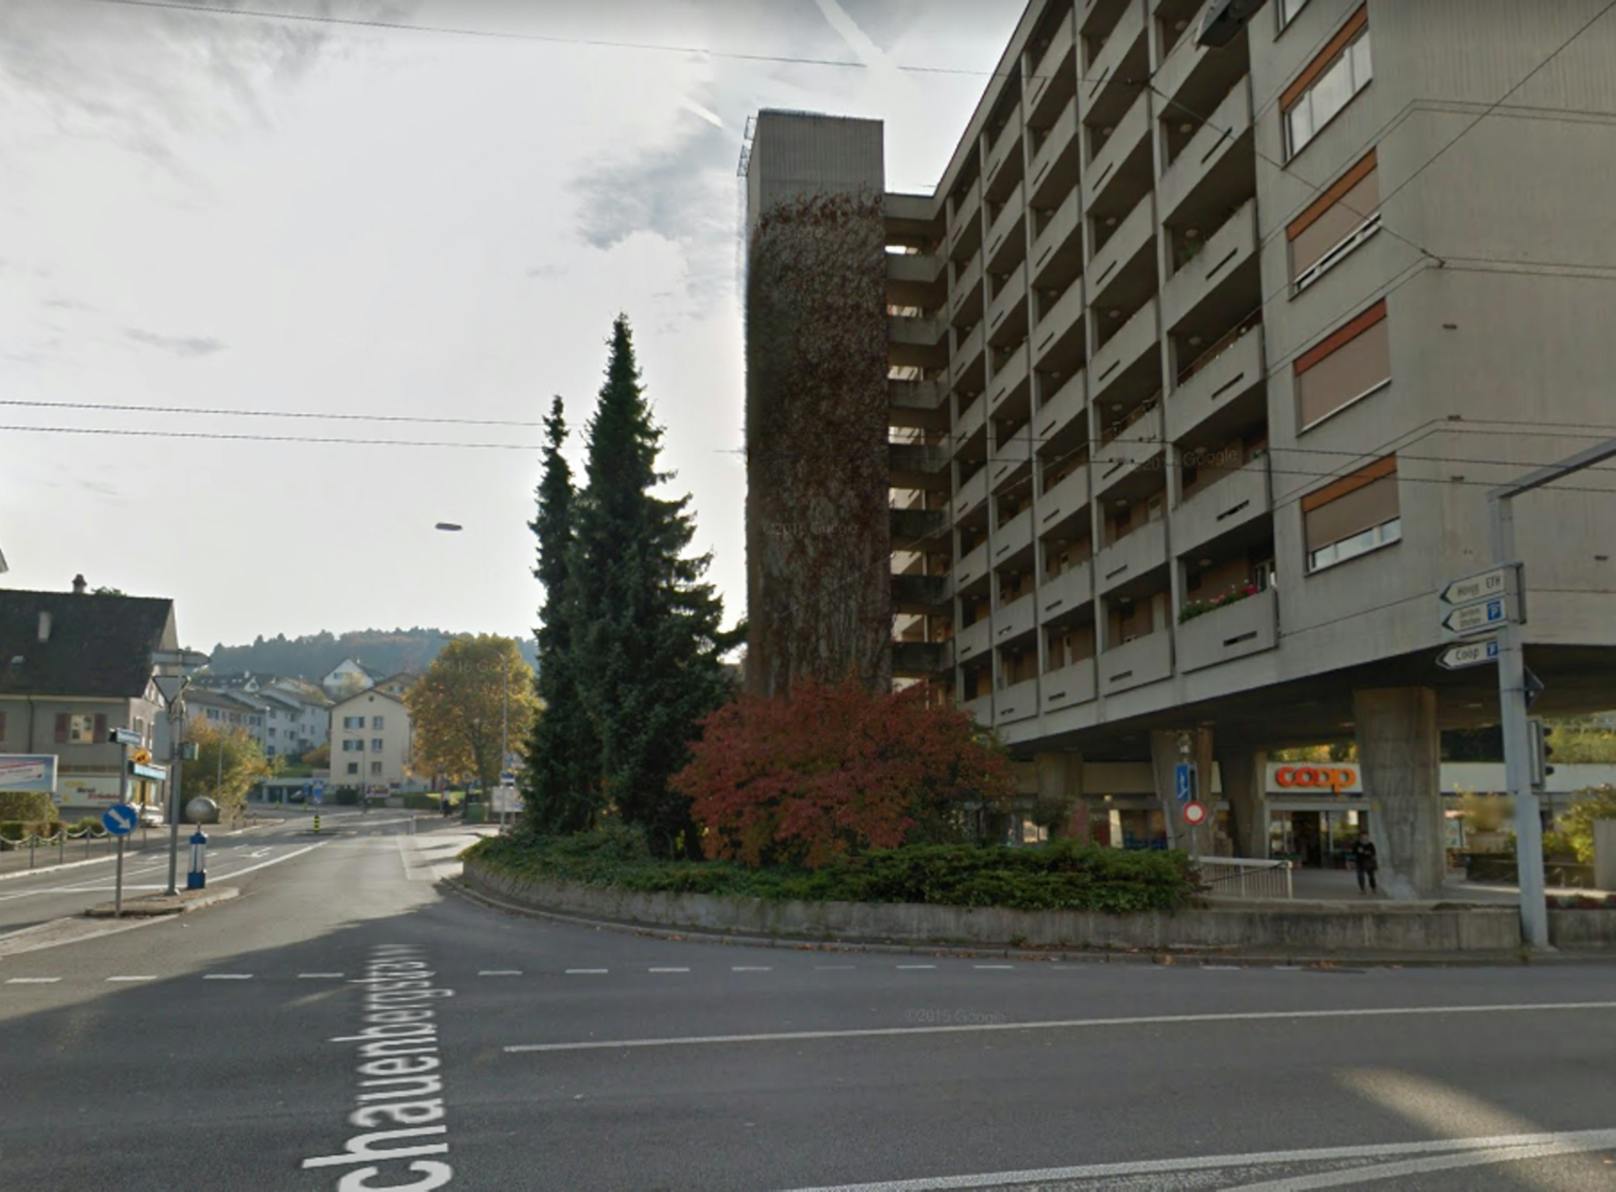 Beim Zehntenhausplatz in Zürich-Affoltern geschah der Vorfall.